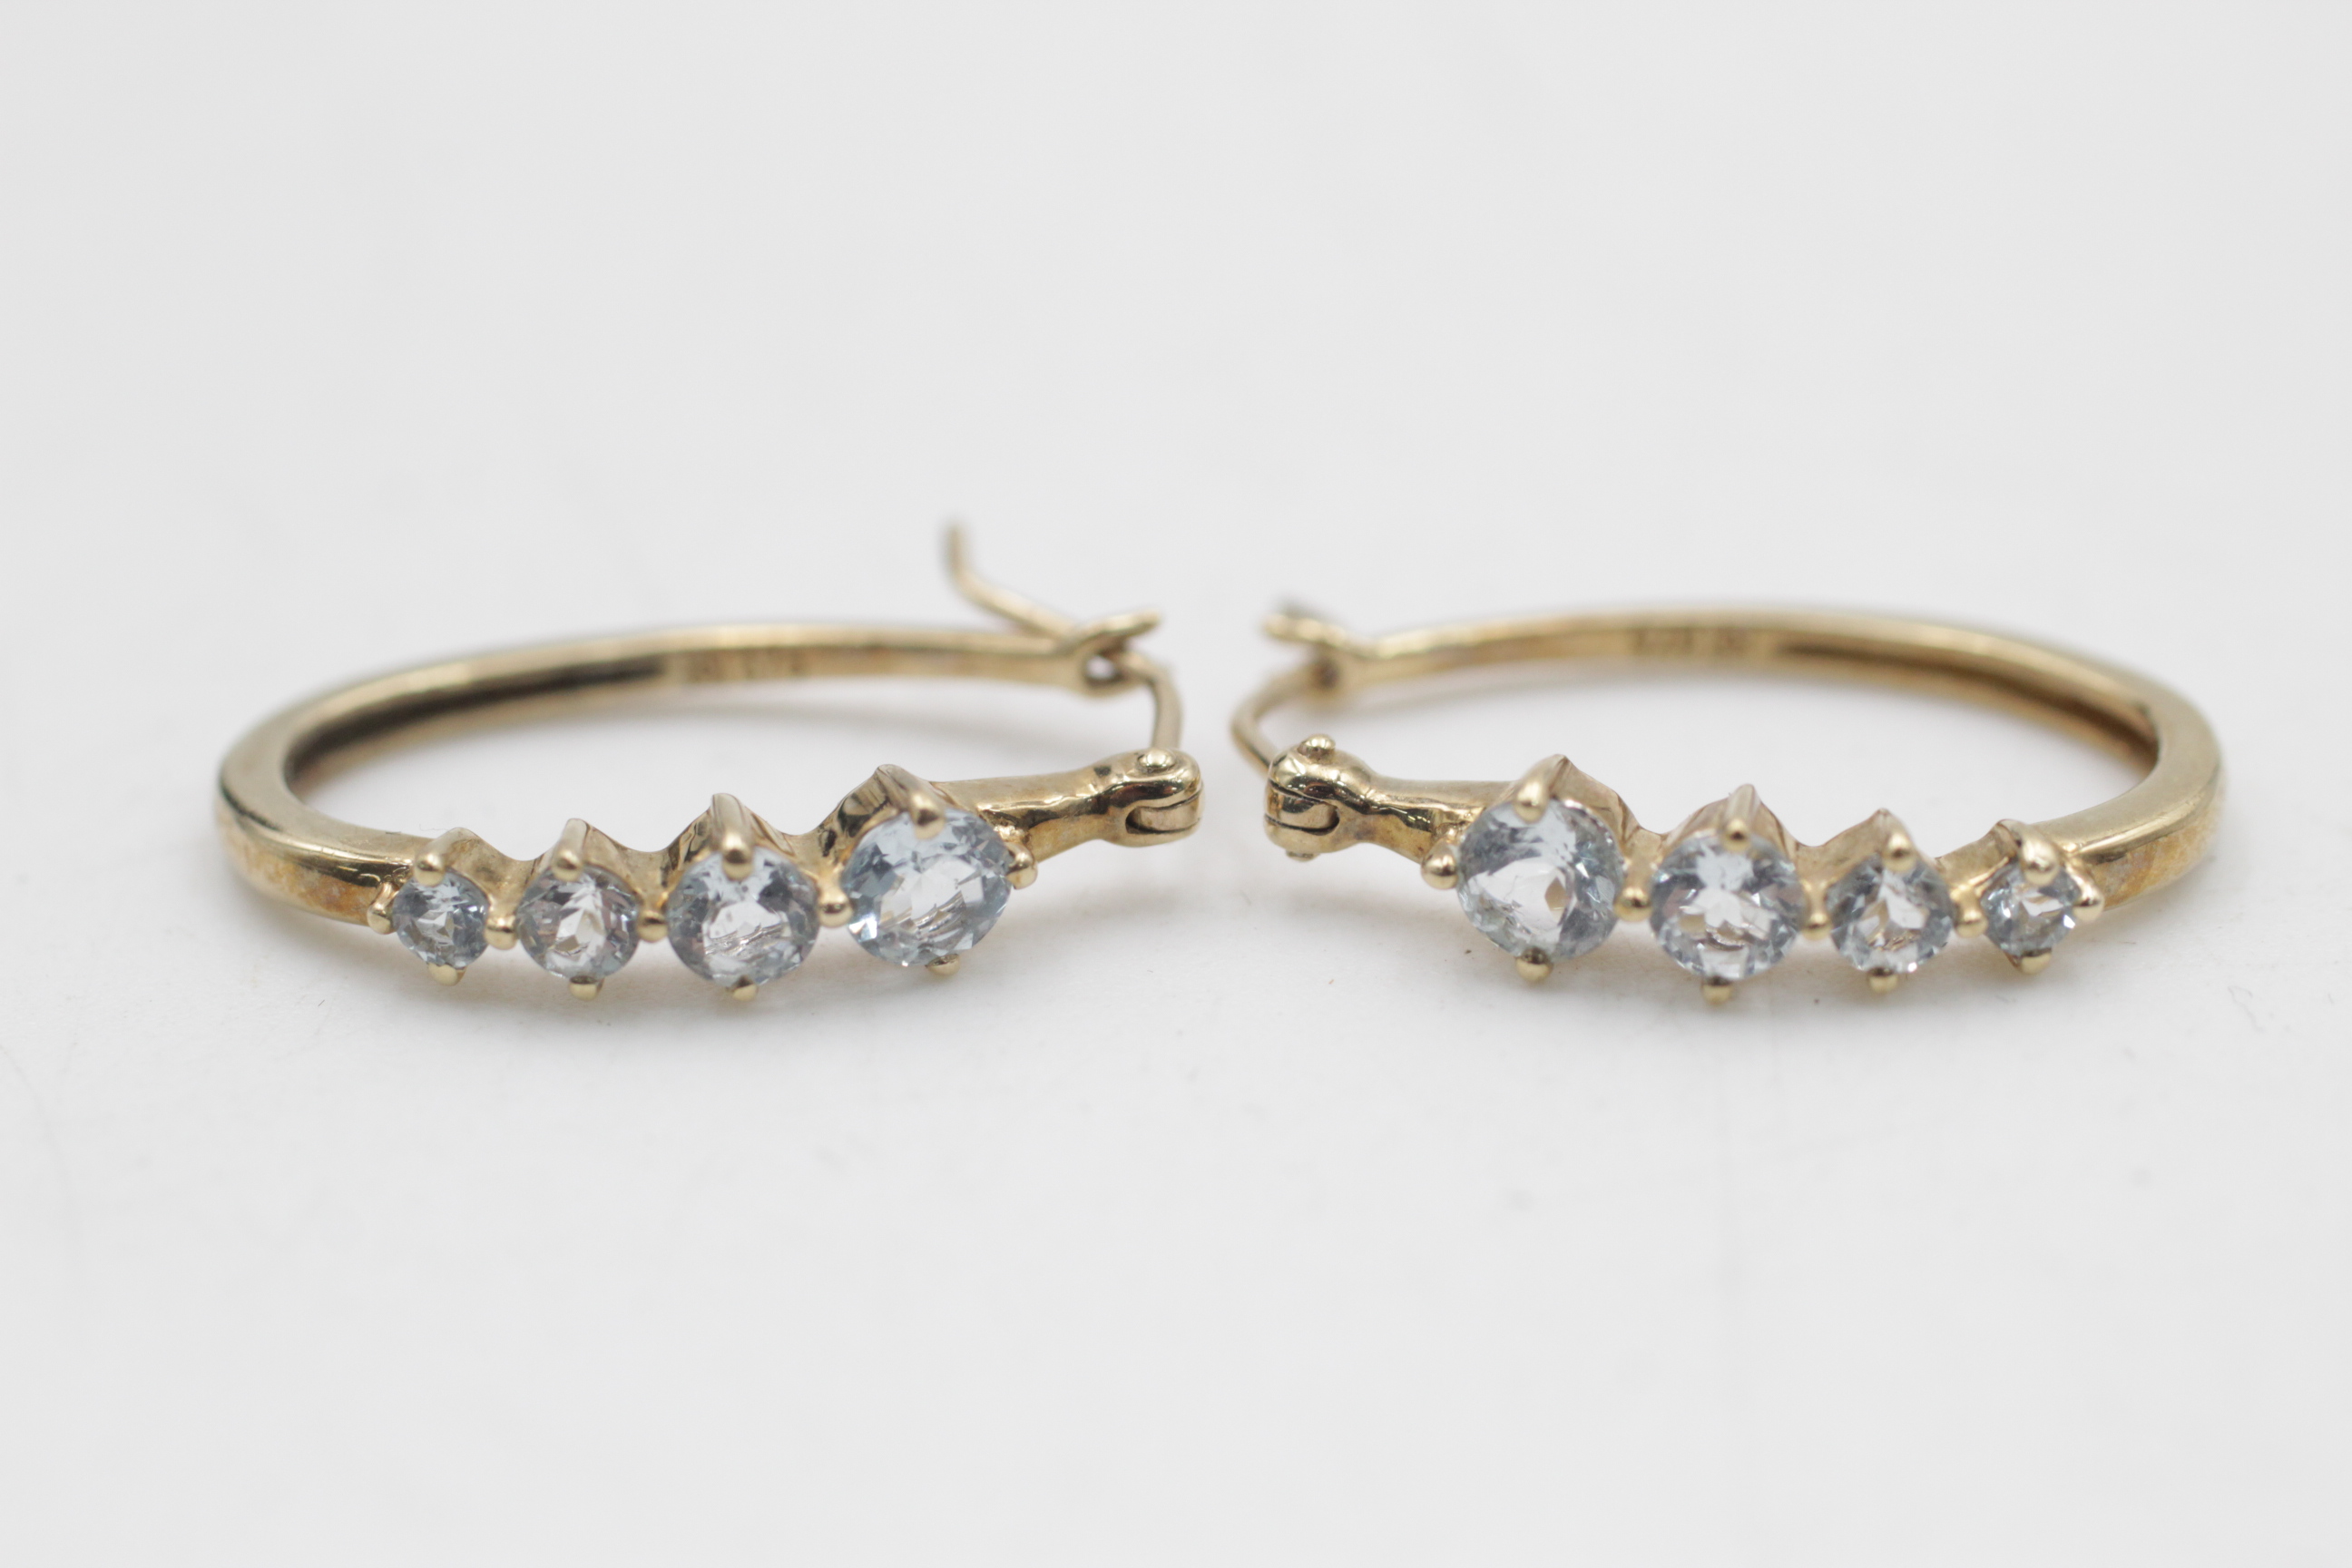 9ct gold vintage aquamarine elongated hoop earrings (2.6g) - Image 2 of 4